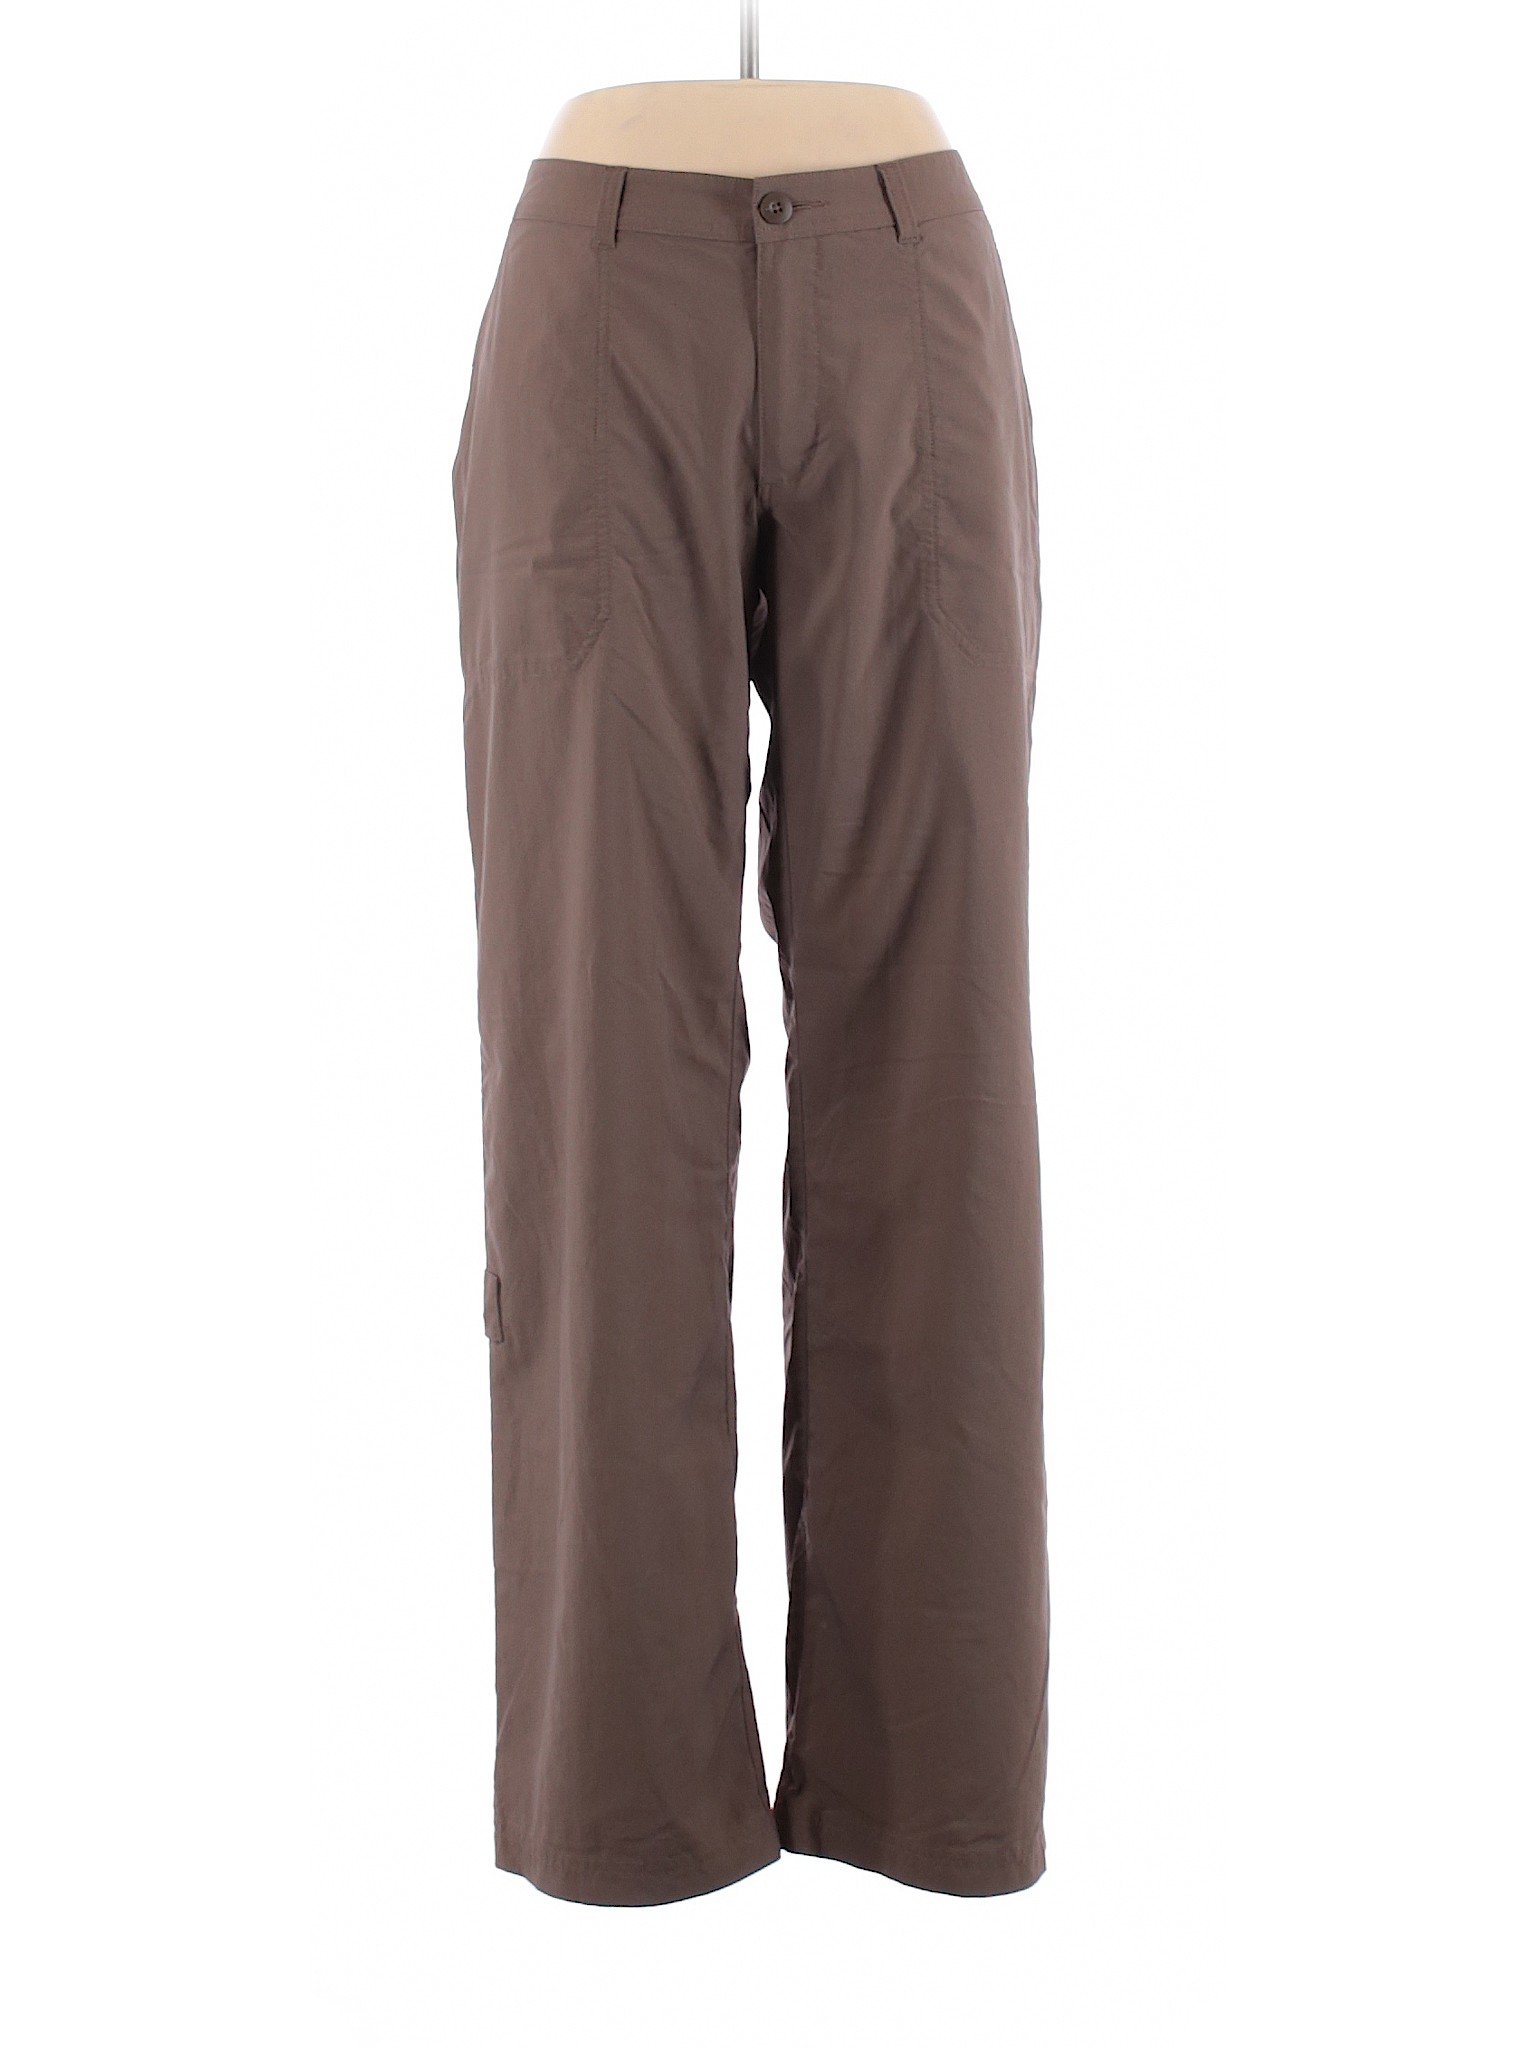 Patagonia Women Brown Casual Pants 12 | eBay